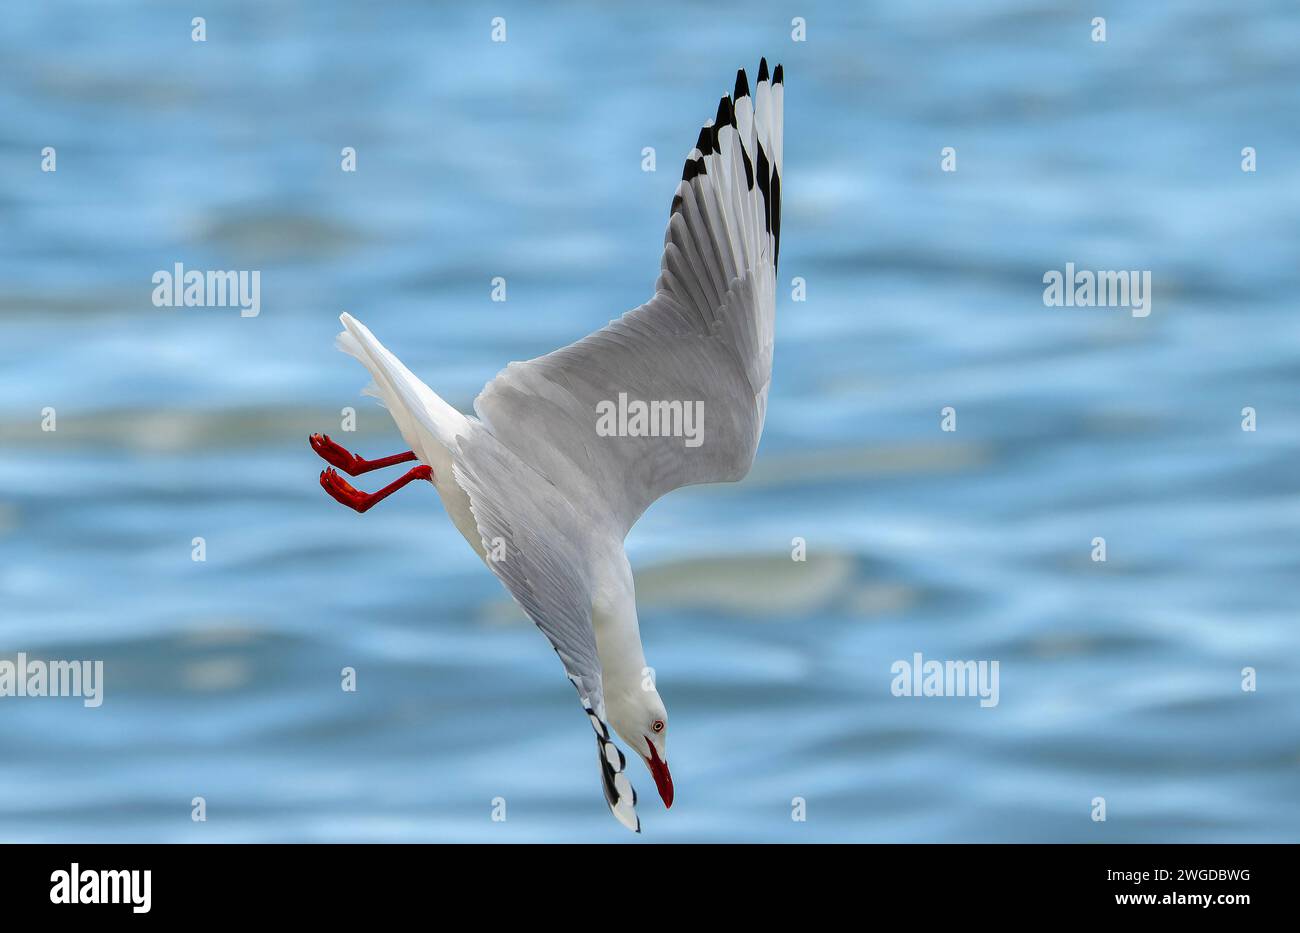 Silver gull, Chroicocephalus novaehollandiae, in flight, diving for food along the tideline. Tasmania. Stock Photo